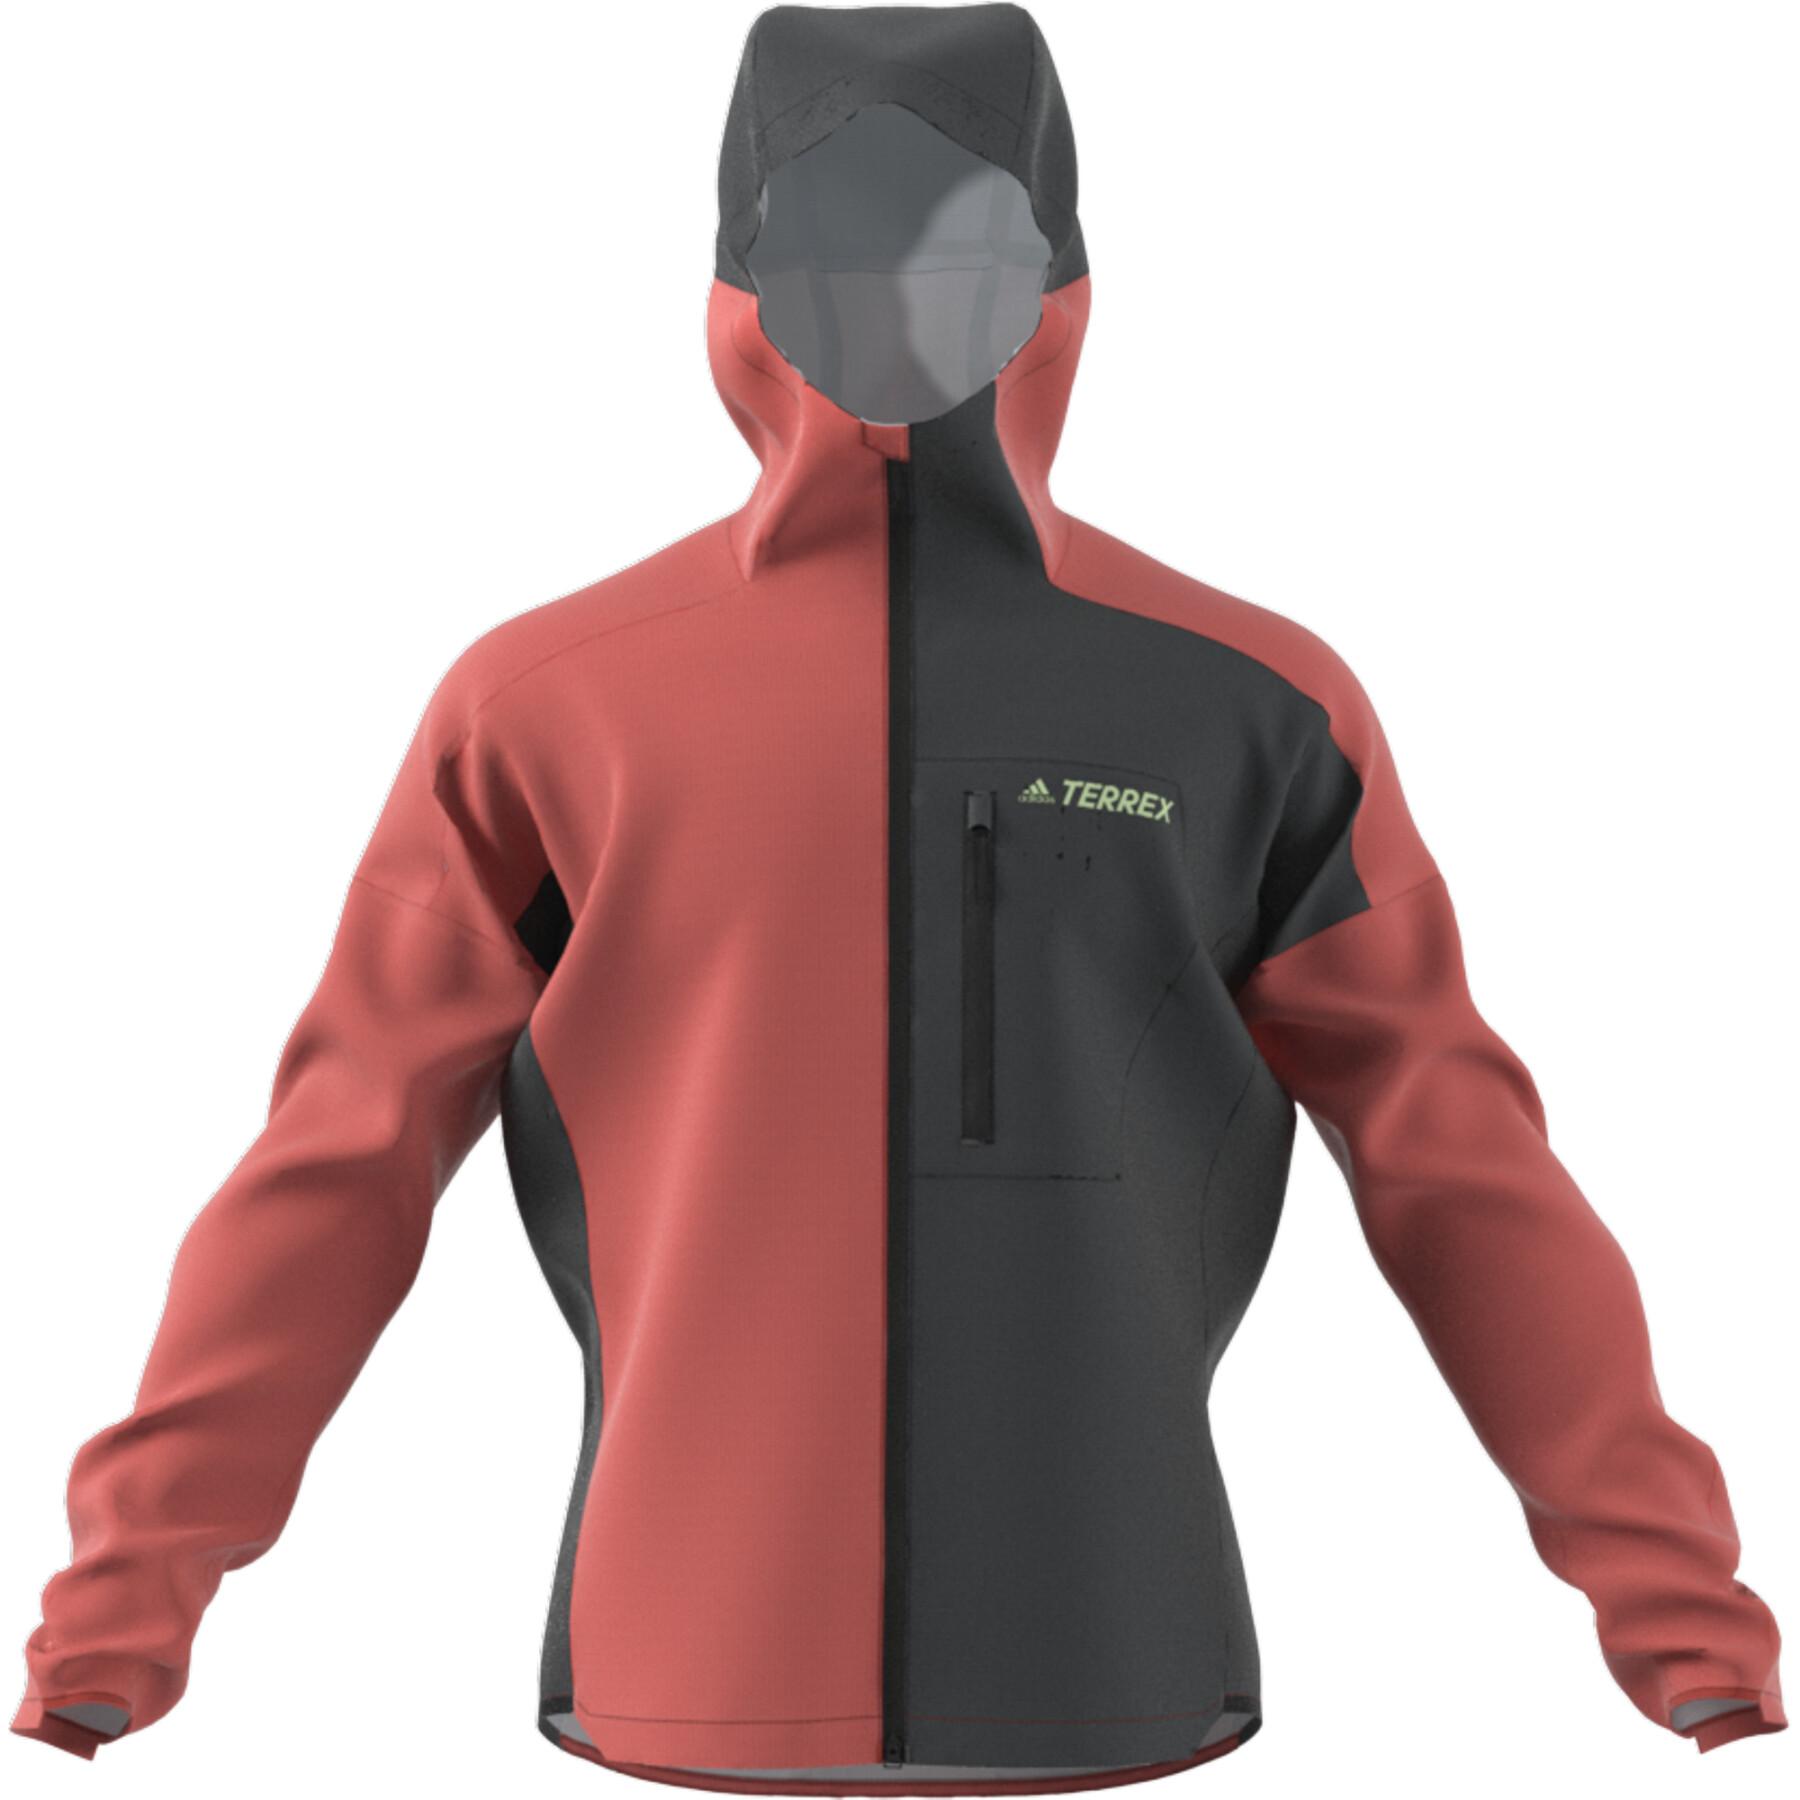 Waterproof jacket adidas Terrex Agravic 2.5 L